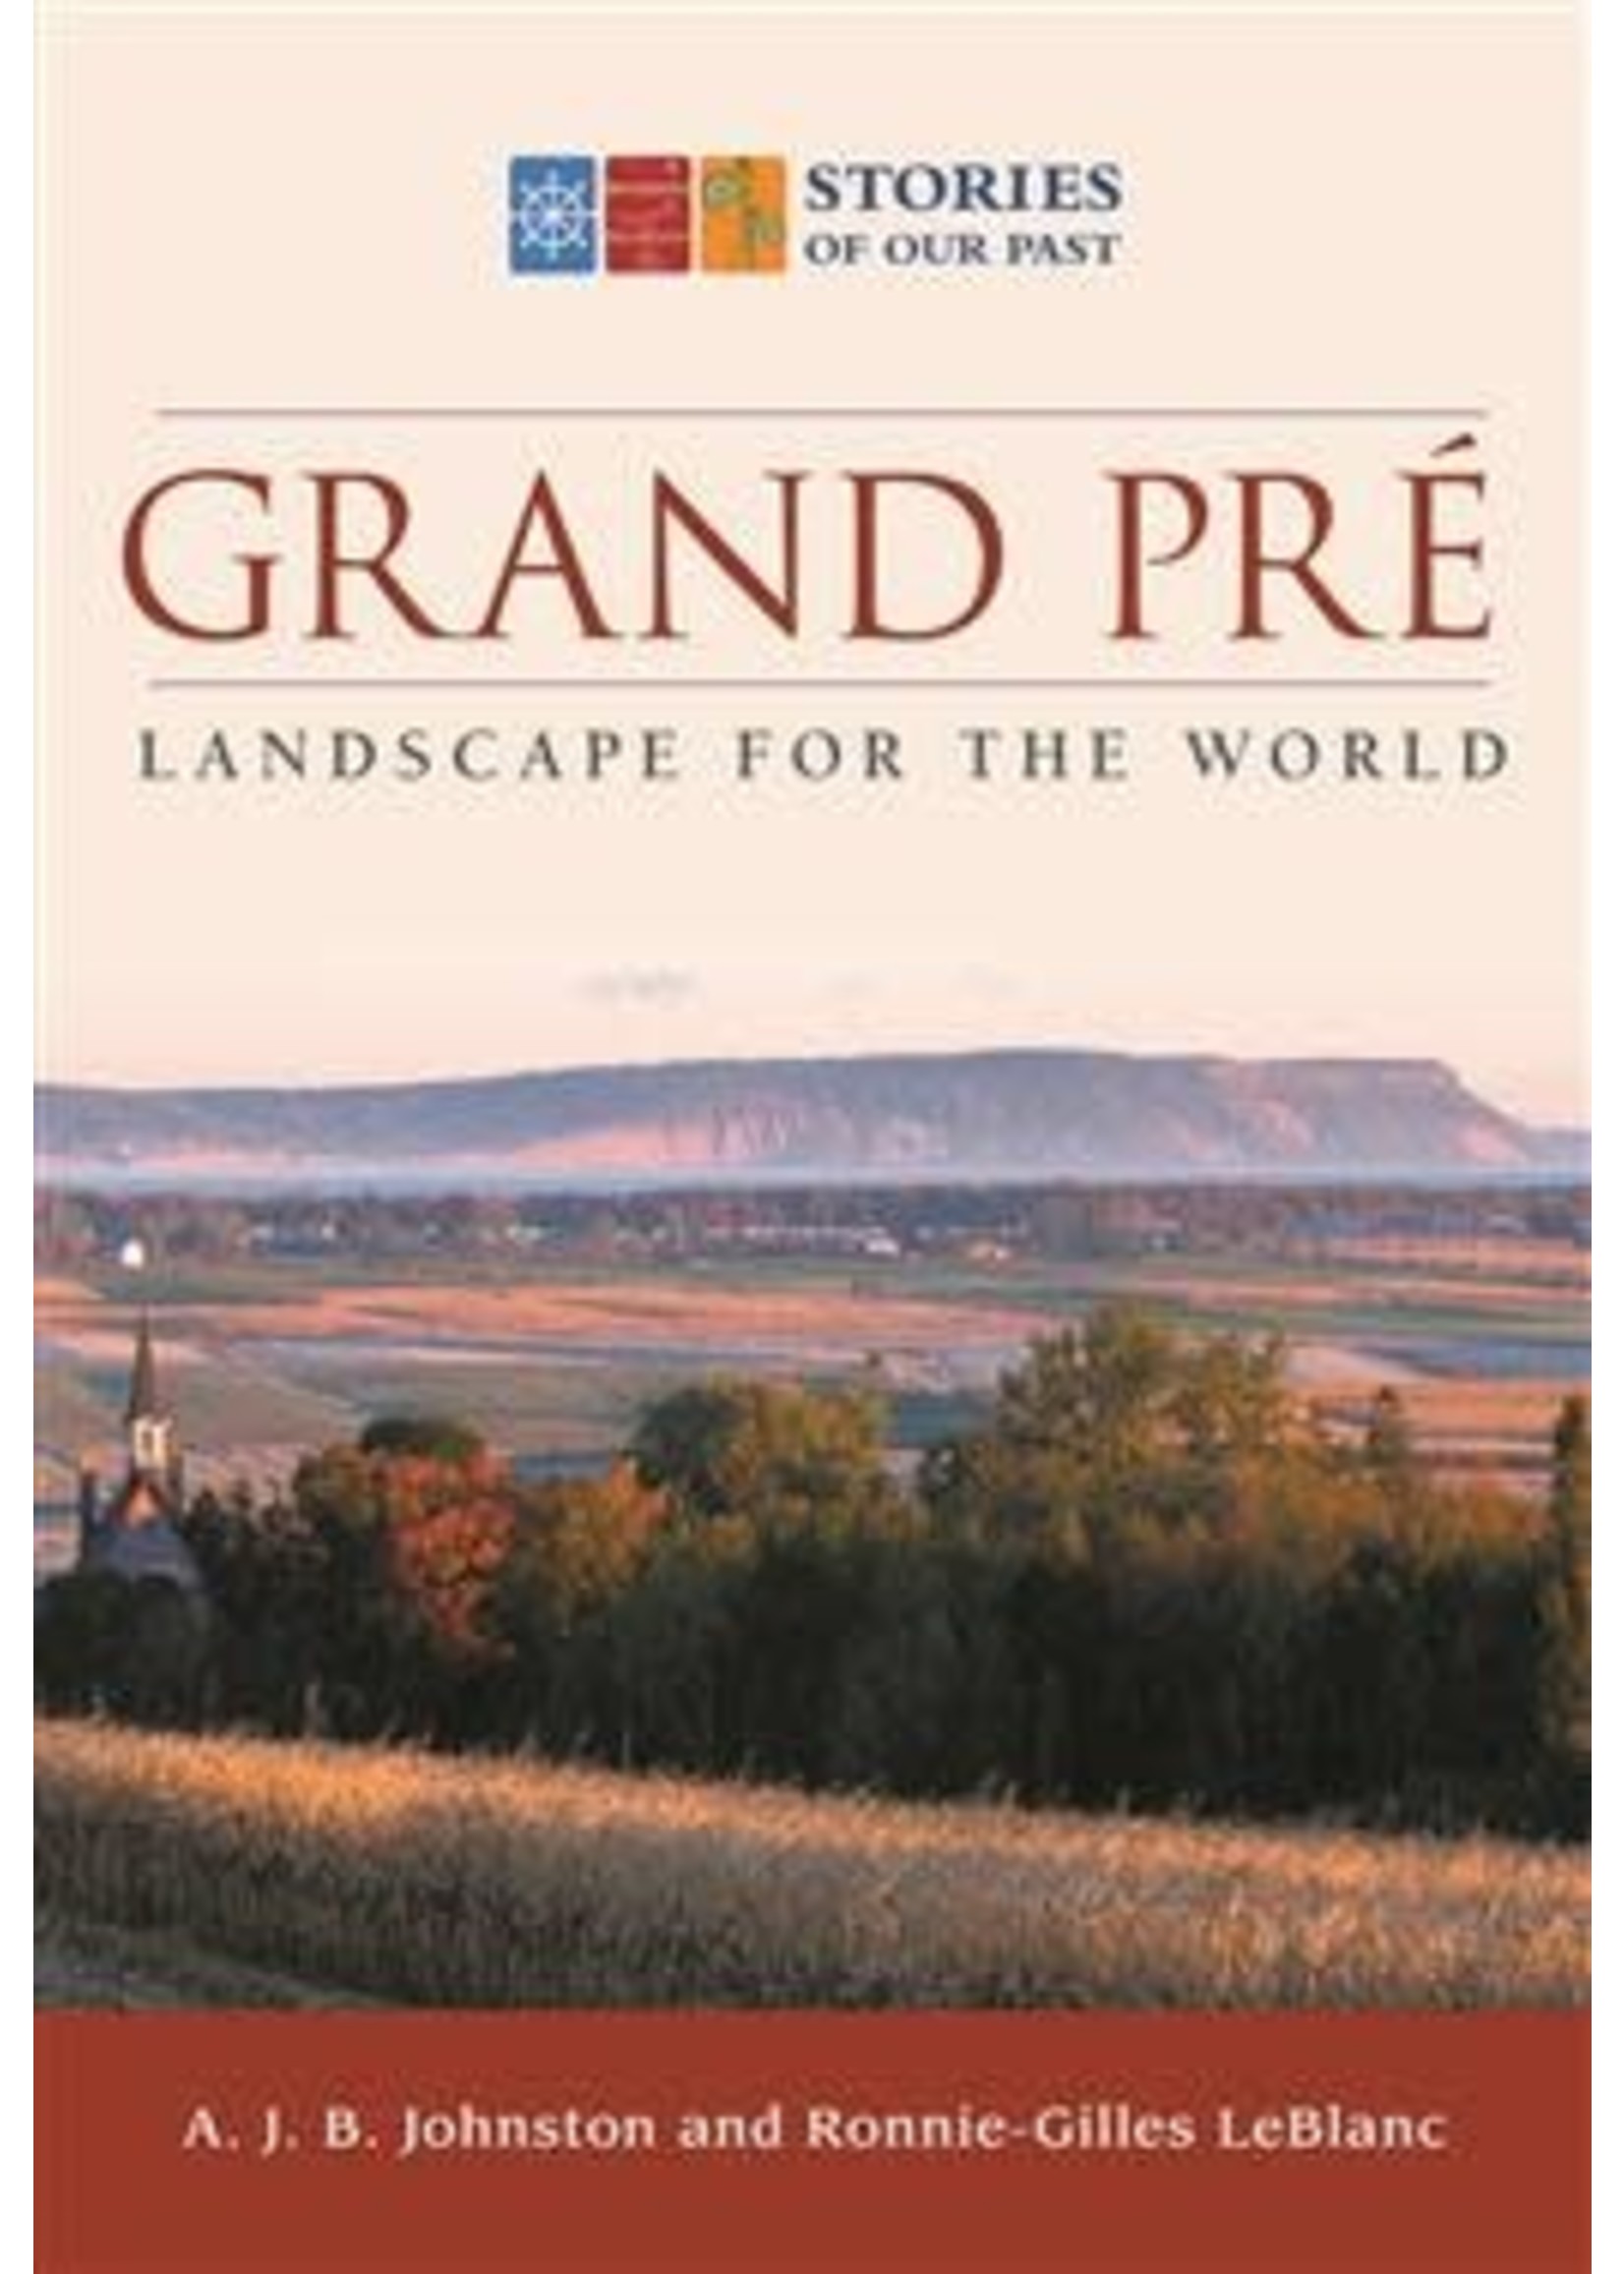 Grand-Pré: Landscape for the World by A.J.B. Johnston, Ronnie-Gilles LeBlanc